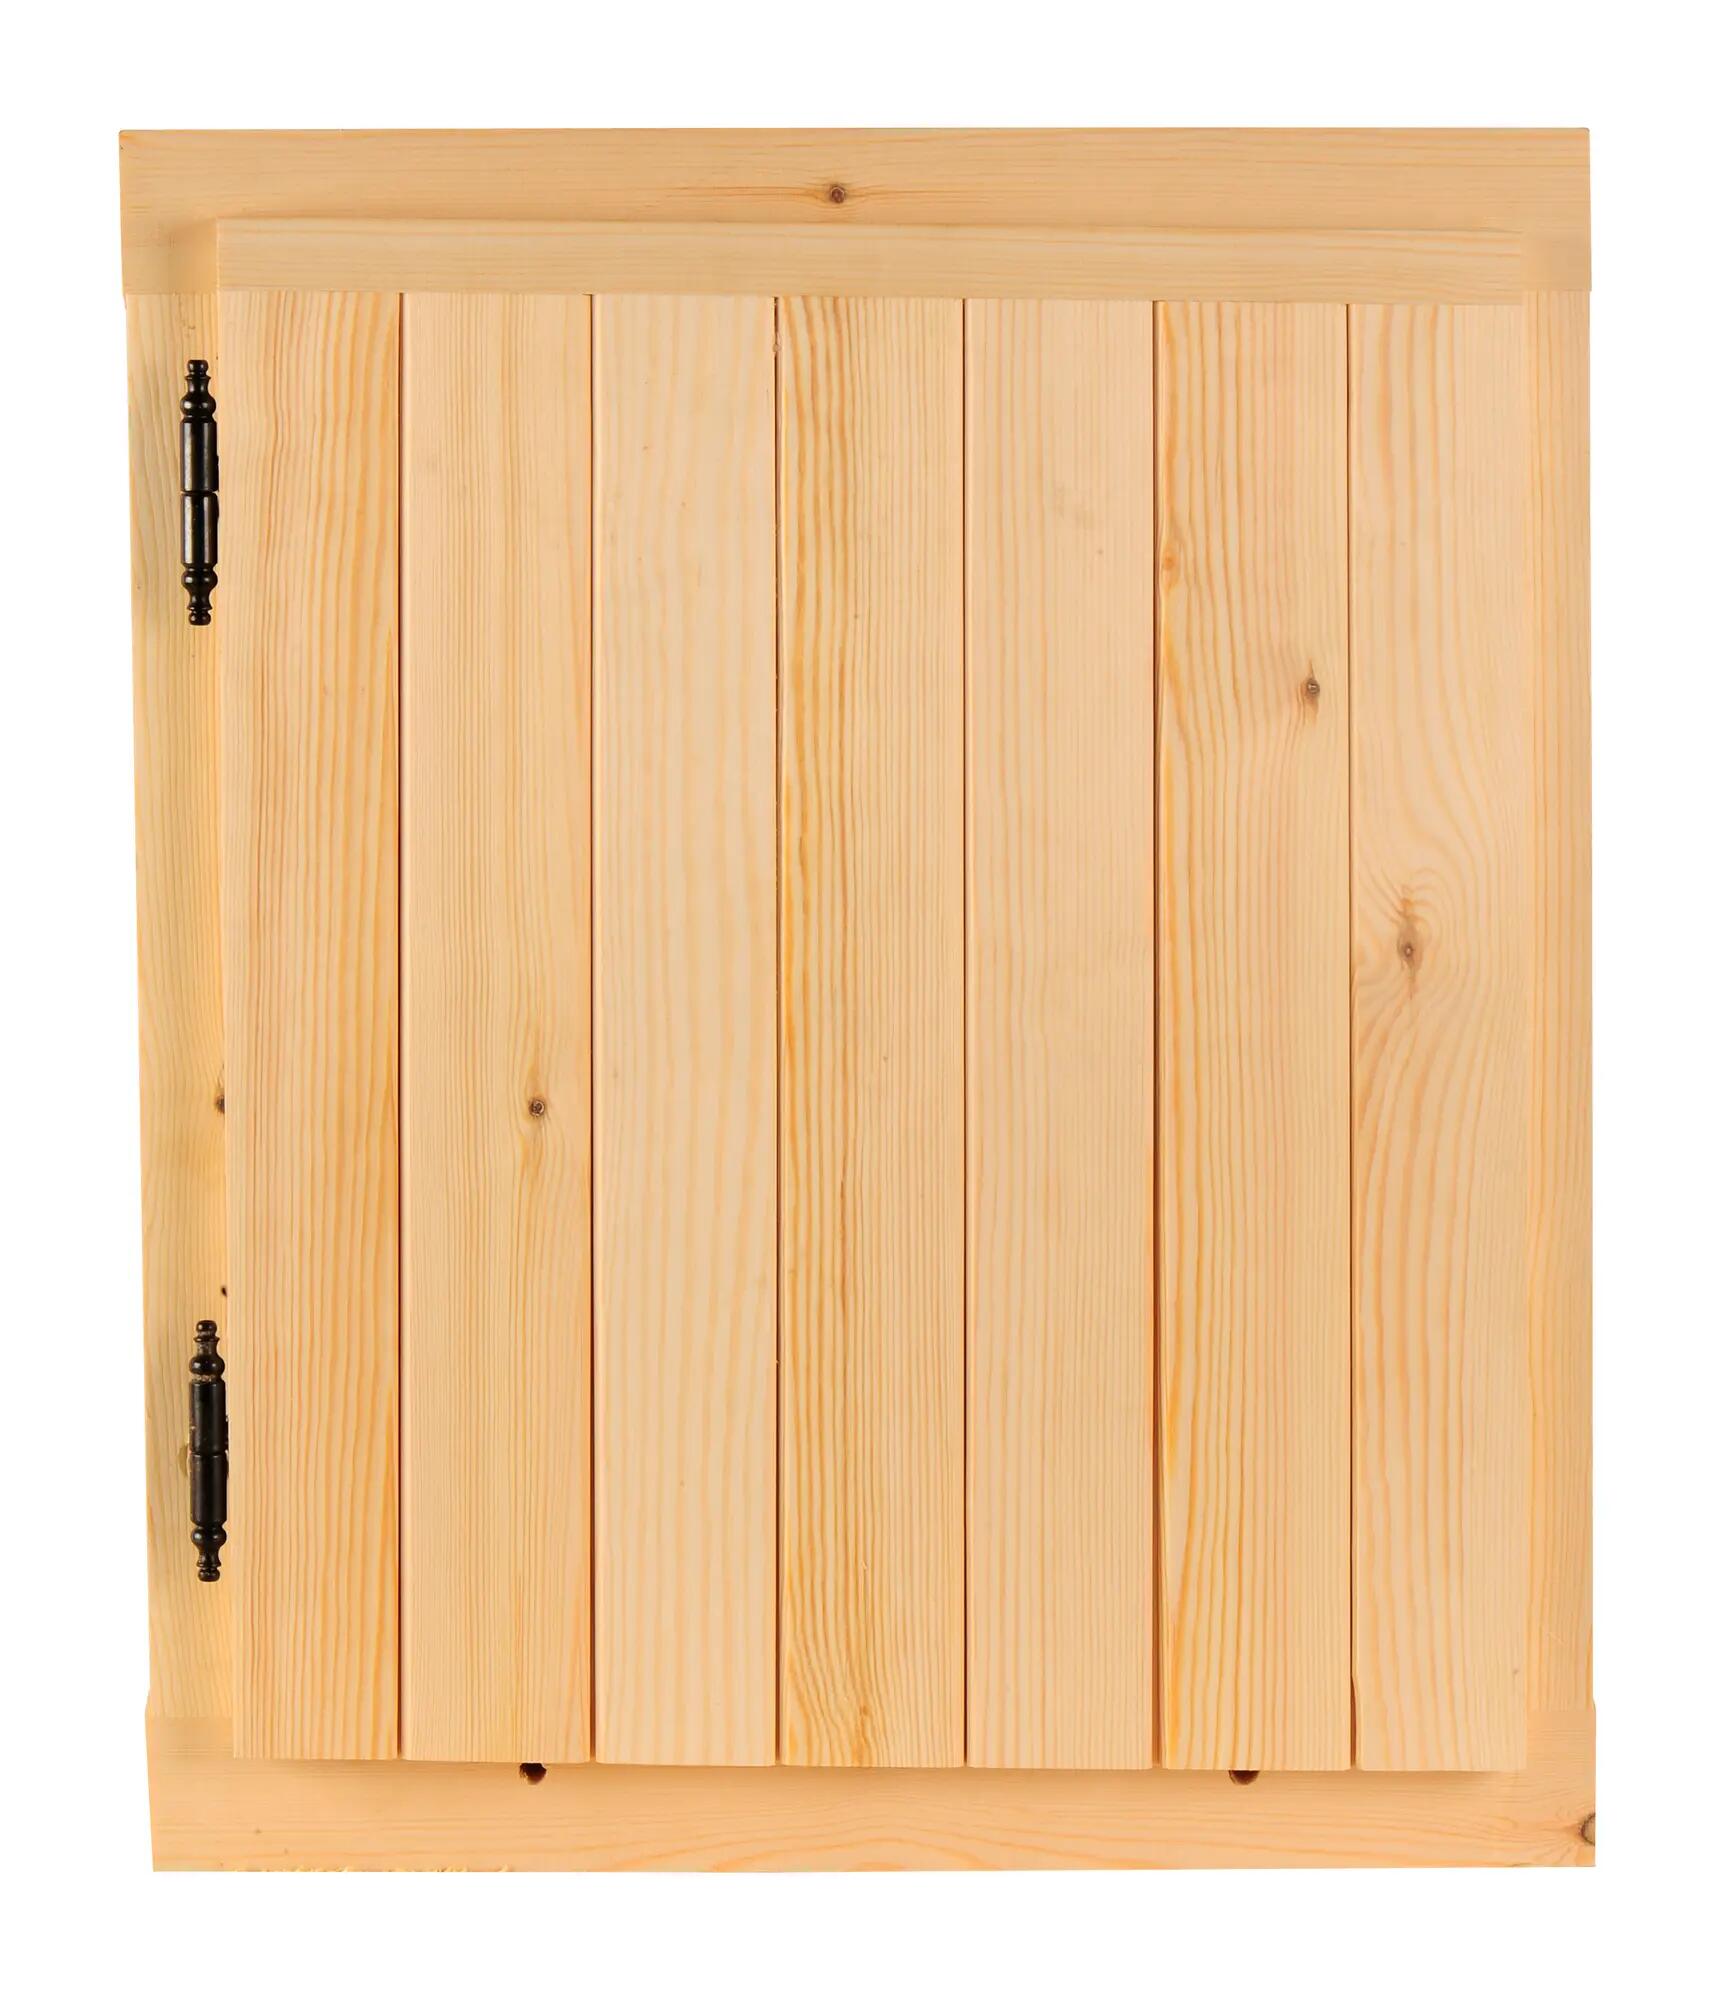 Ventana madera de pino practicable de 50x60 cm